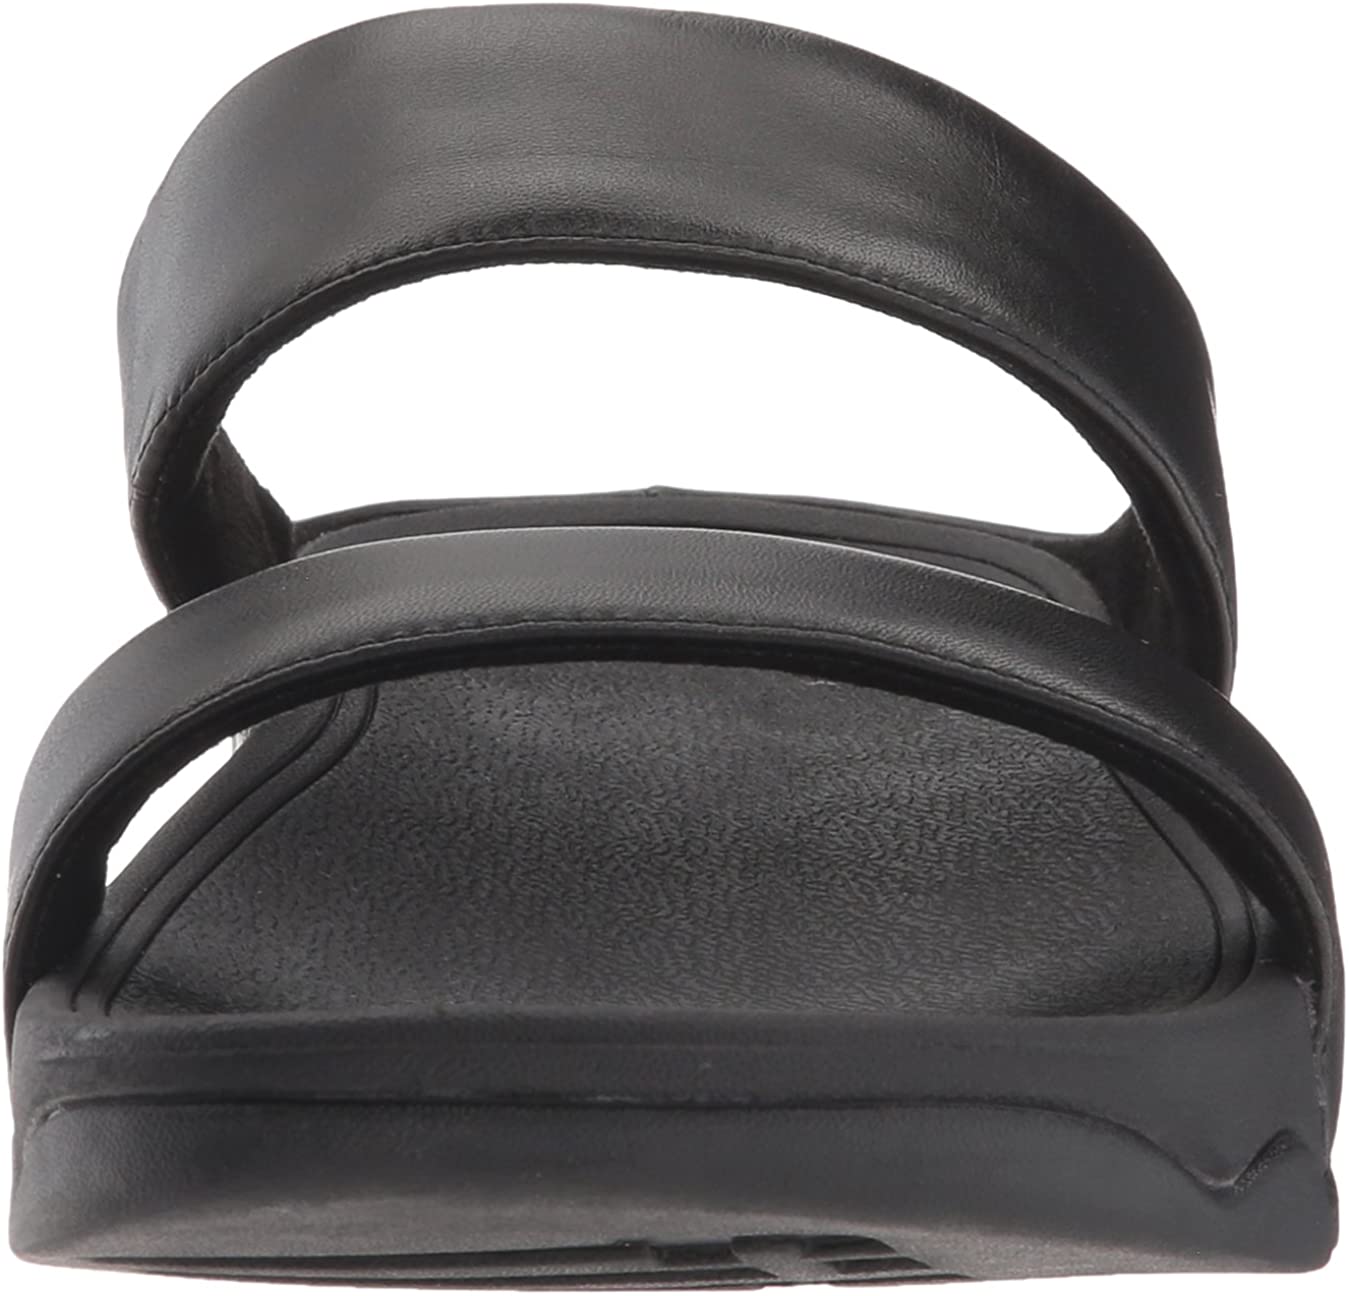 FitFlop Women's Lulu Leather Slide Sandal, Black, Size 10.0 1hCK | eBay